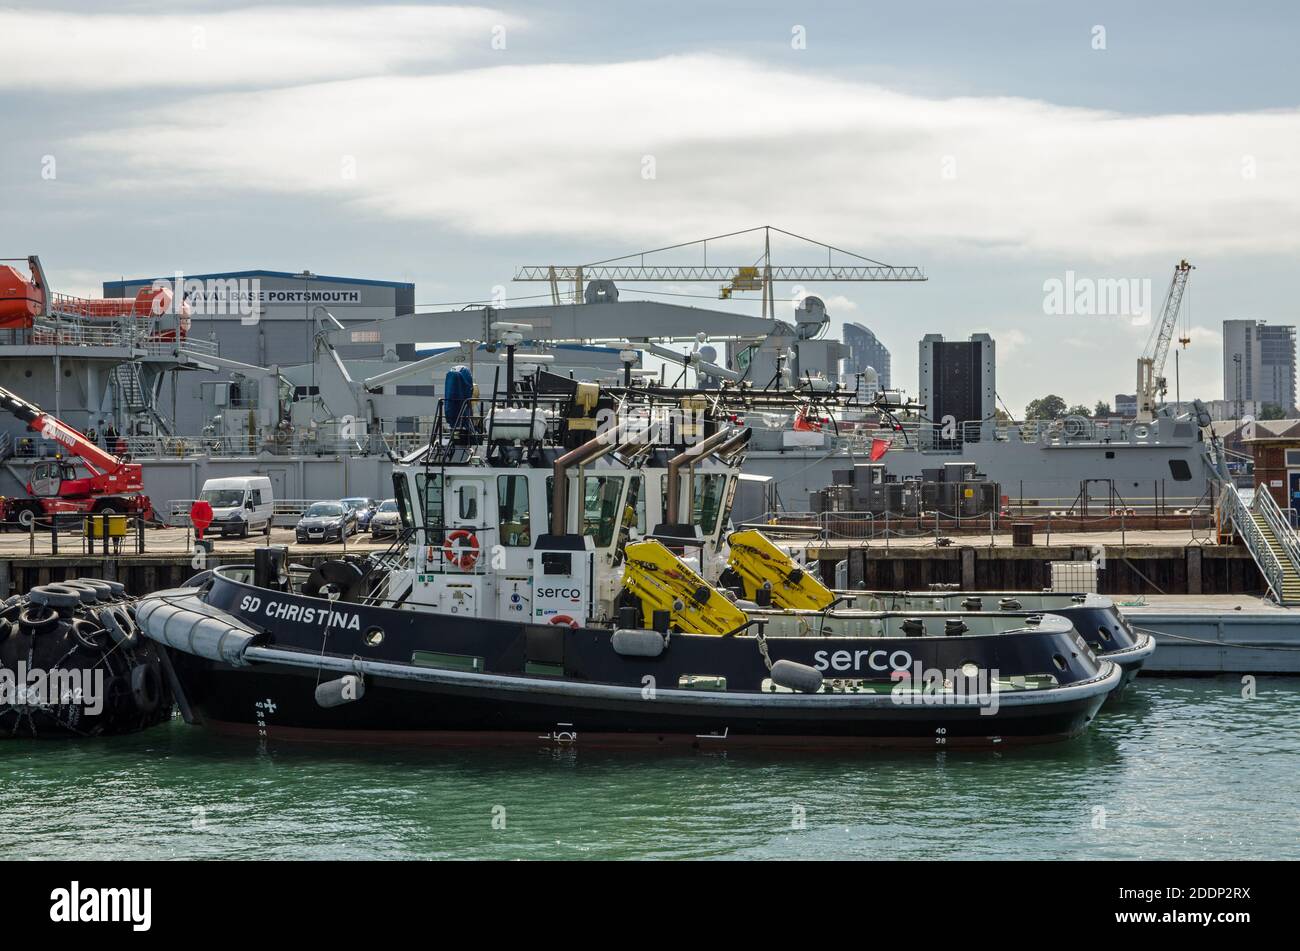 Portsmouth, Großbritannien - 8. September 2020: Das von Serco betriebene Schlepper SD Christina vertäute an einem sonnigen Summe in der Royal Navy Werft in Portsmouth Harbour Stockfoto